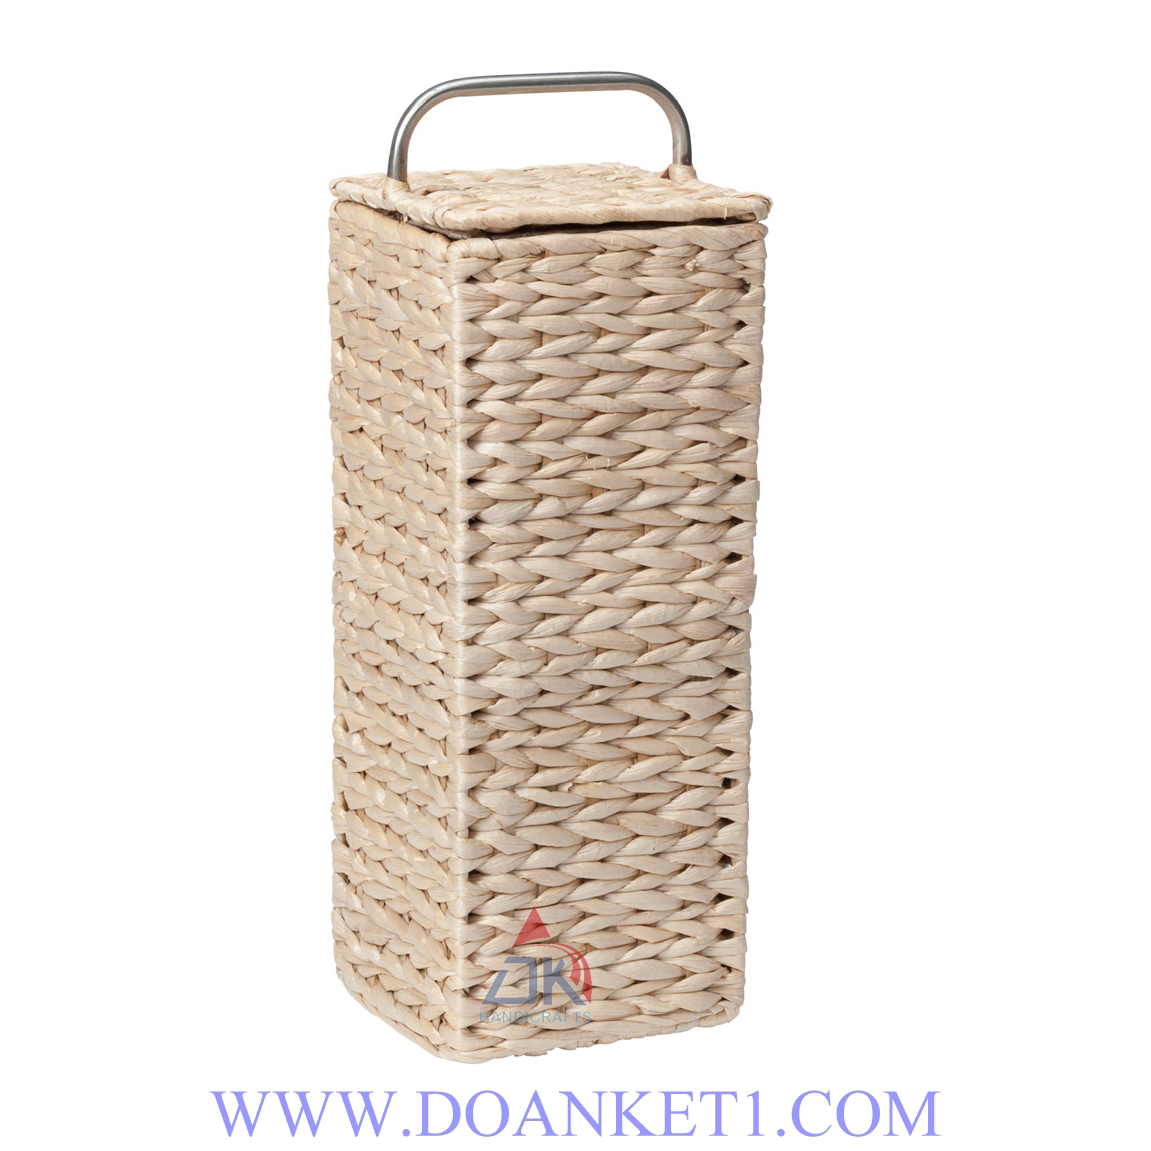 Water Hyacinth Storage Basket # DK373